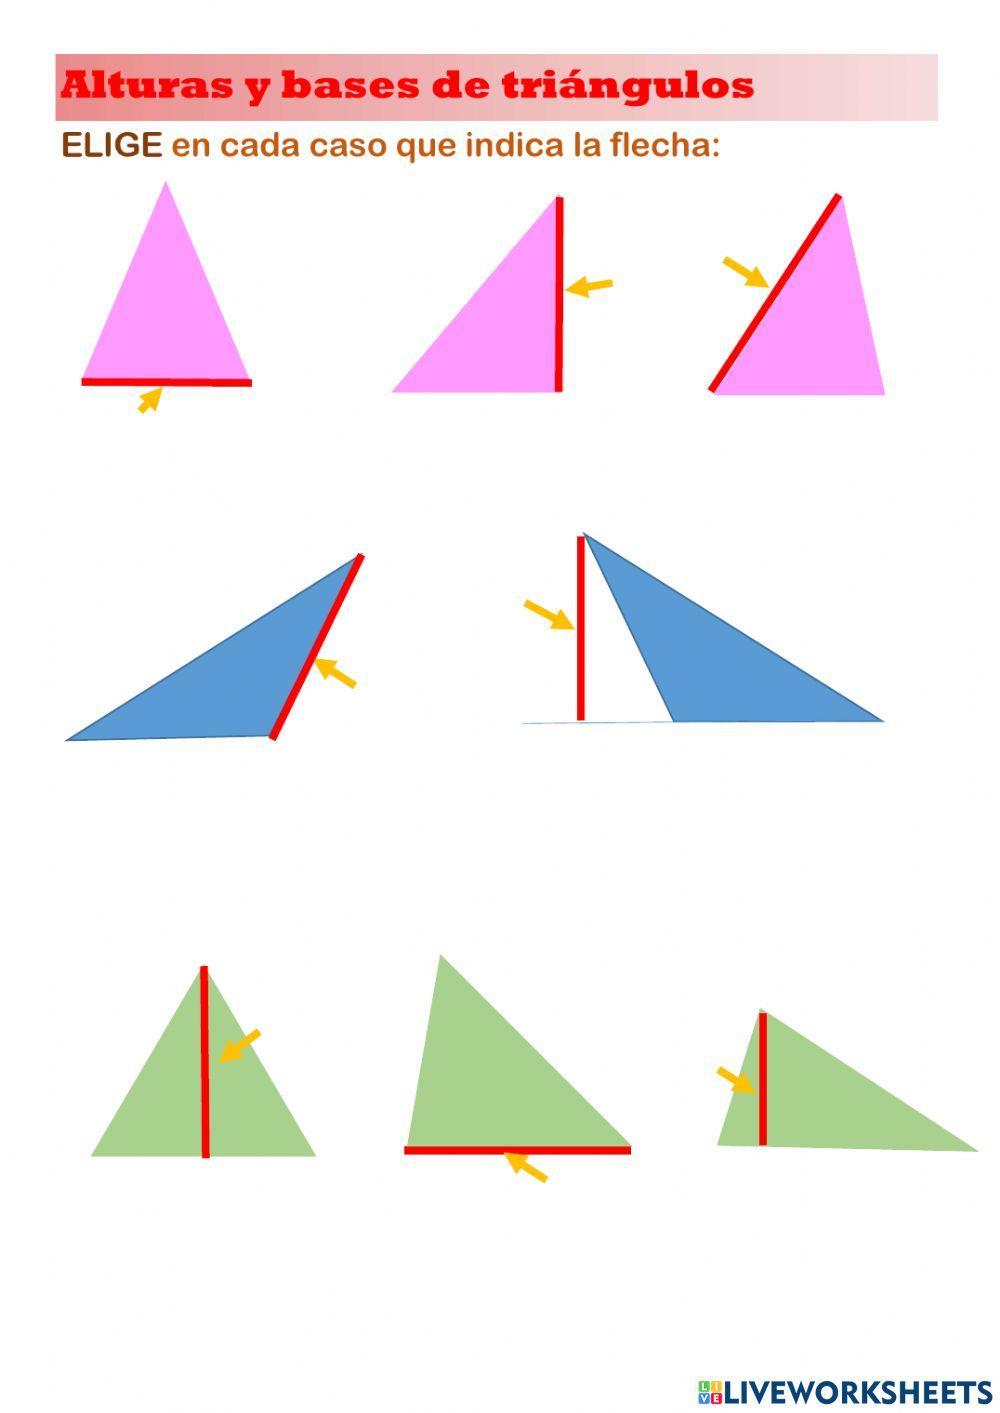 Alturas y bases de triángulos worksheet | Live Worksheets